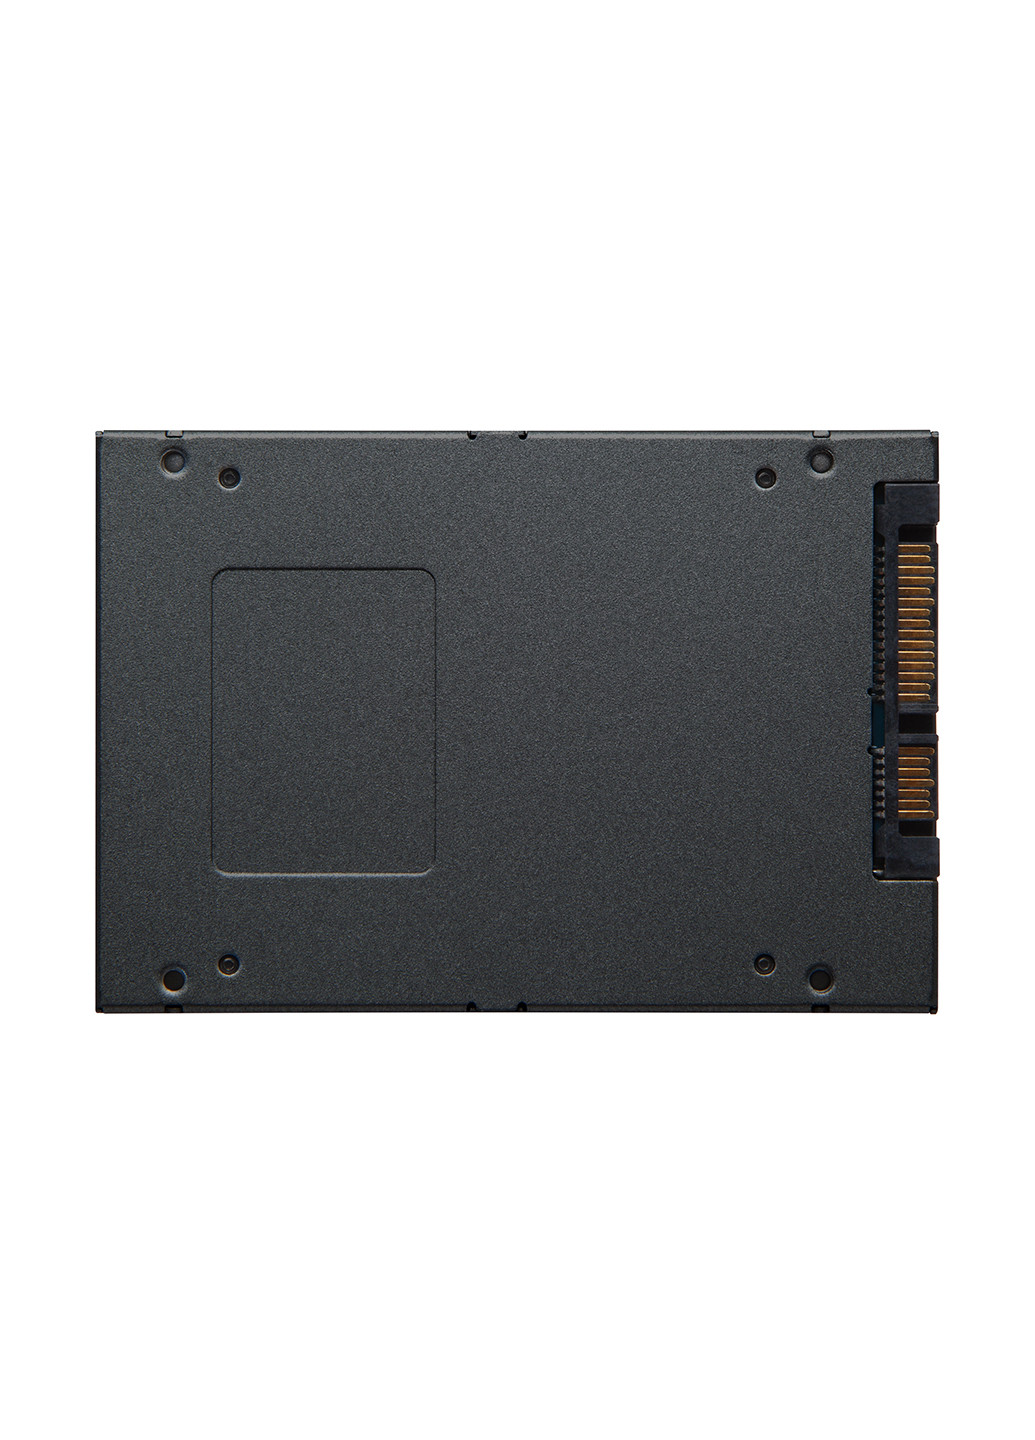 Внутренний SSD A400 240GB 2.5" SATAIII TLC (SA400S37/240G) Kingston Внутренний SSD Kingston A400 240GB 2.5" SATAIII TLC (SA400S37/240G) комбинированные